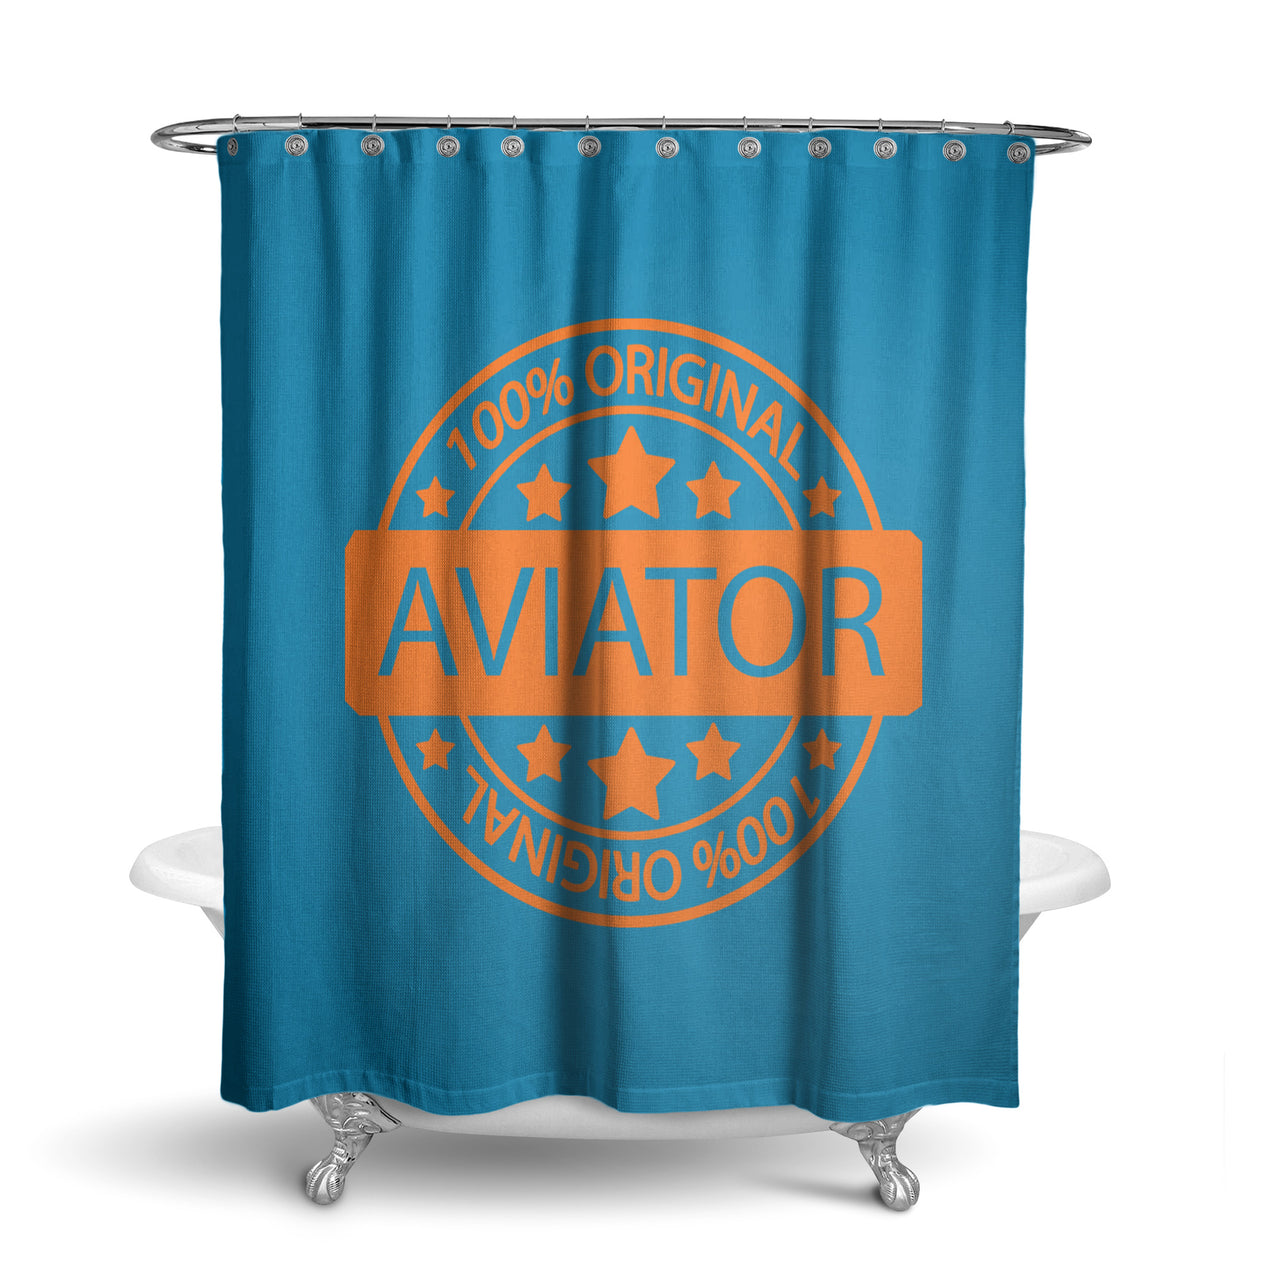 100 Original Aviator Designed Shower Curtains